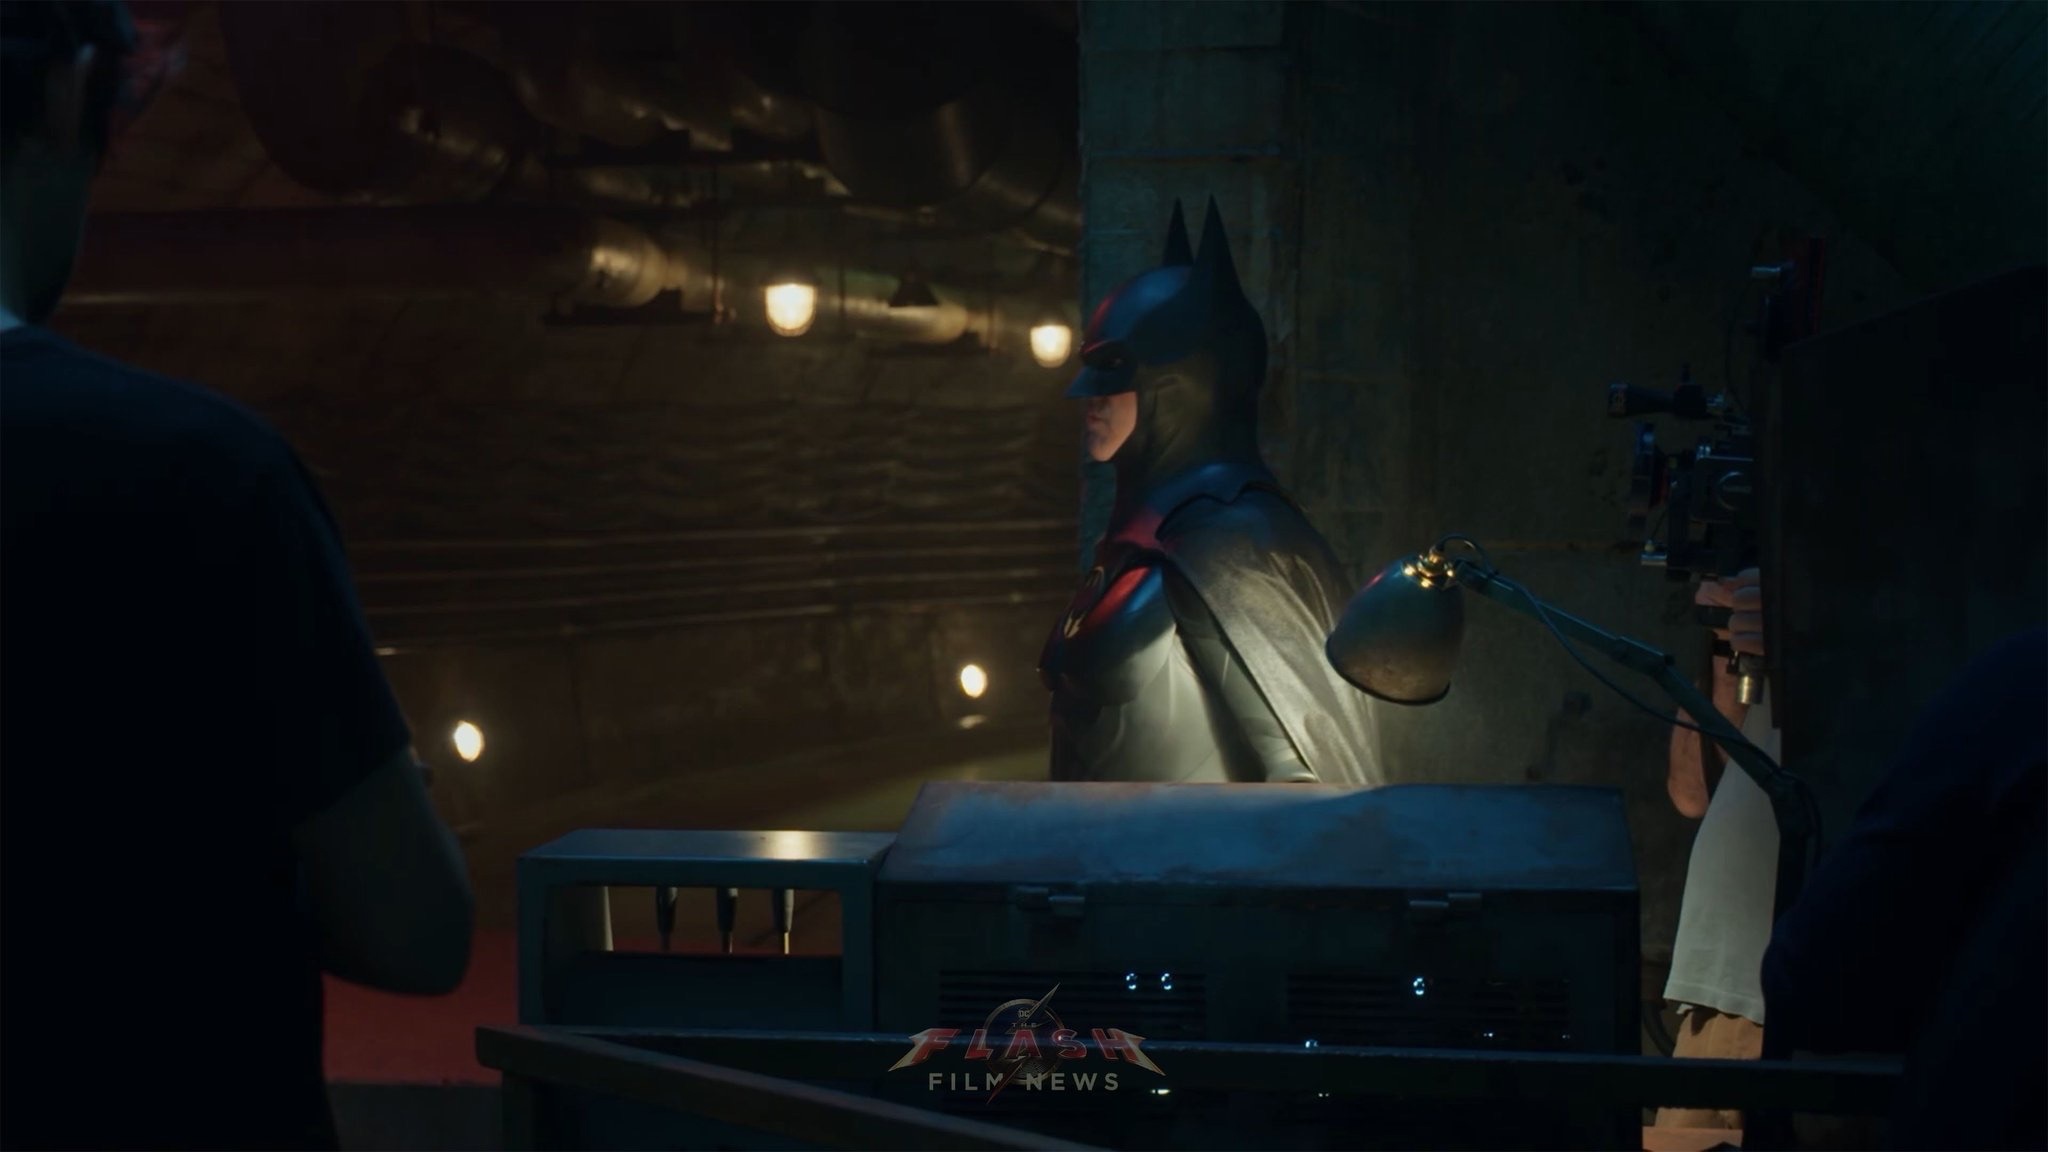 Новые кадры «Флэша» показали Майкла Китона в роли Бэтмена